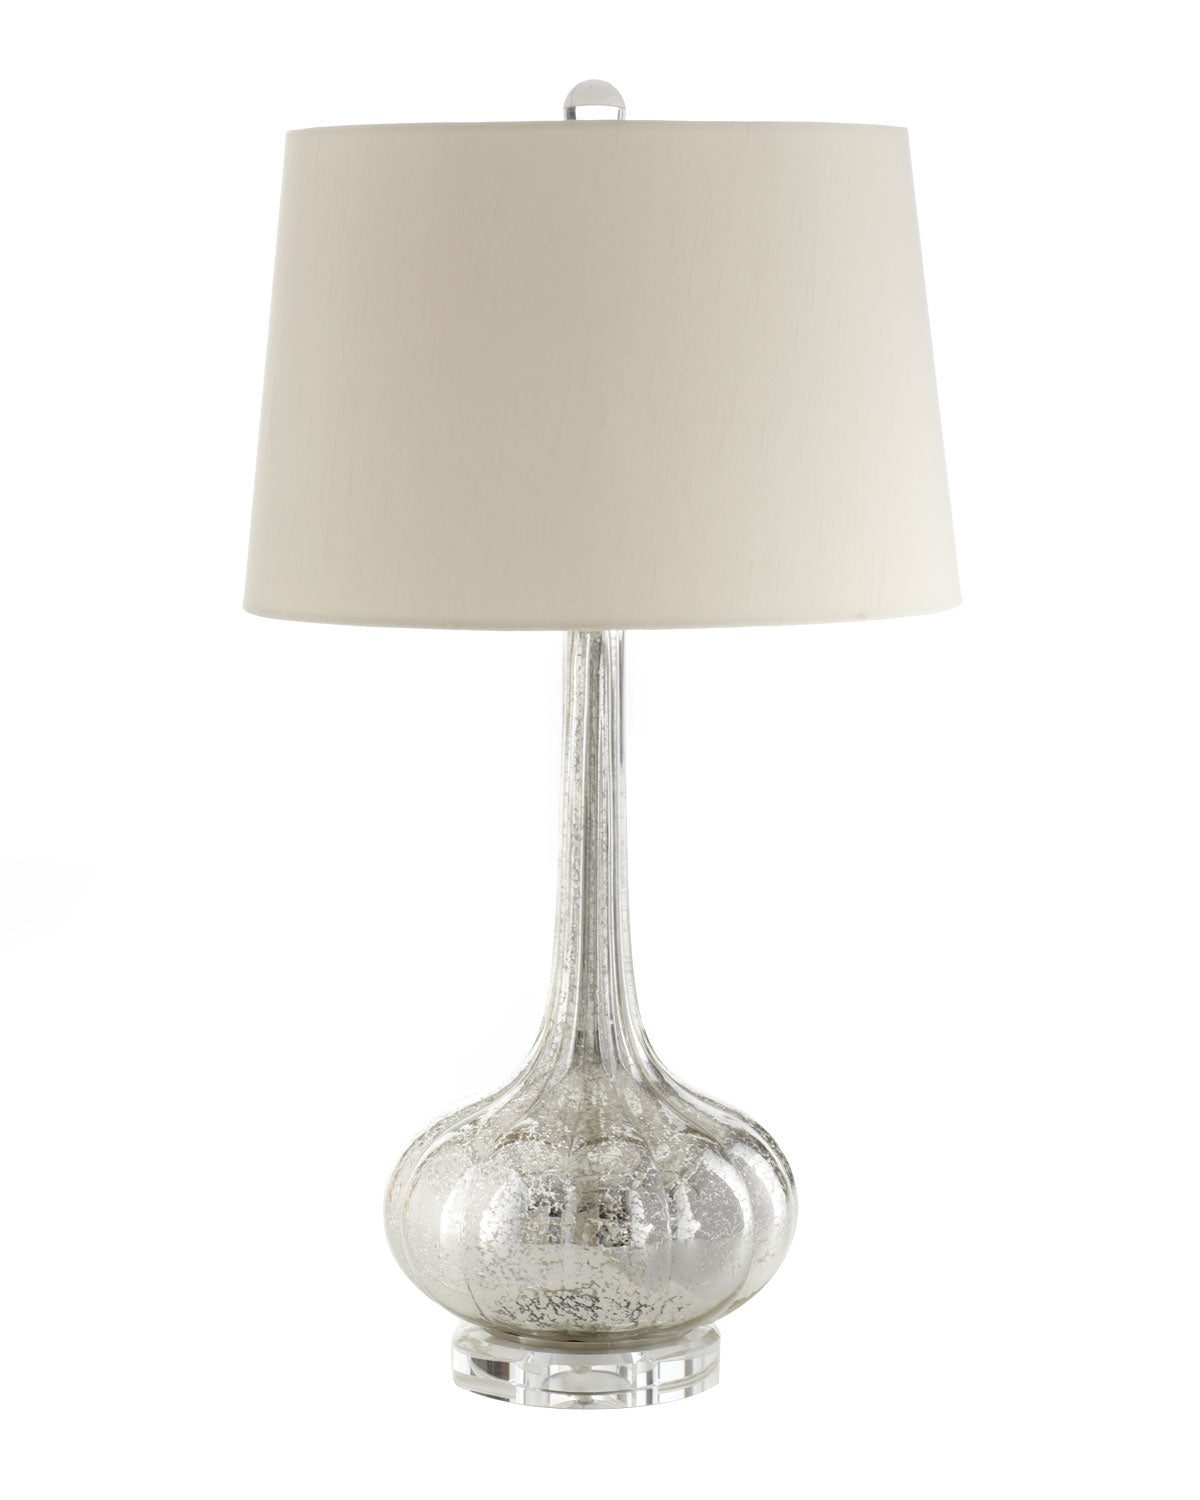 Стеклянная настольная лампа ртутного цвета в стиле неоклассики "Вилма" (на белом фоне)